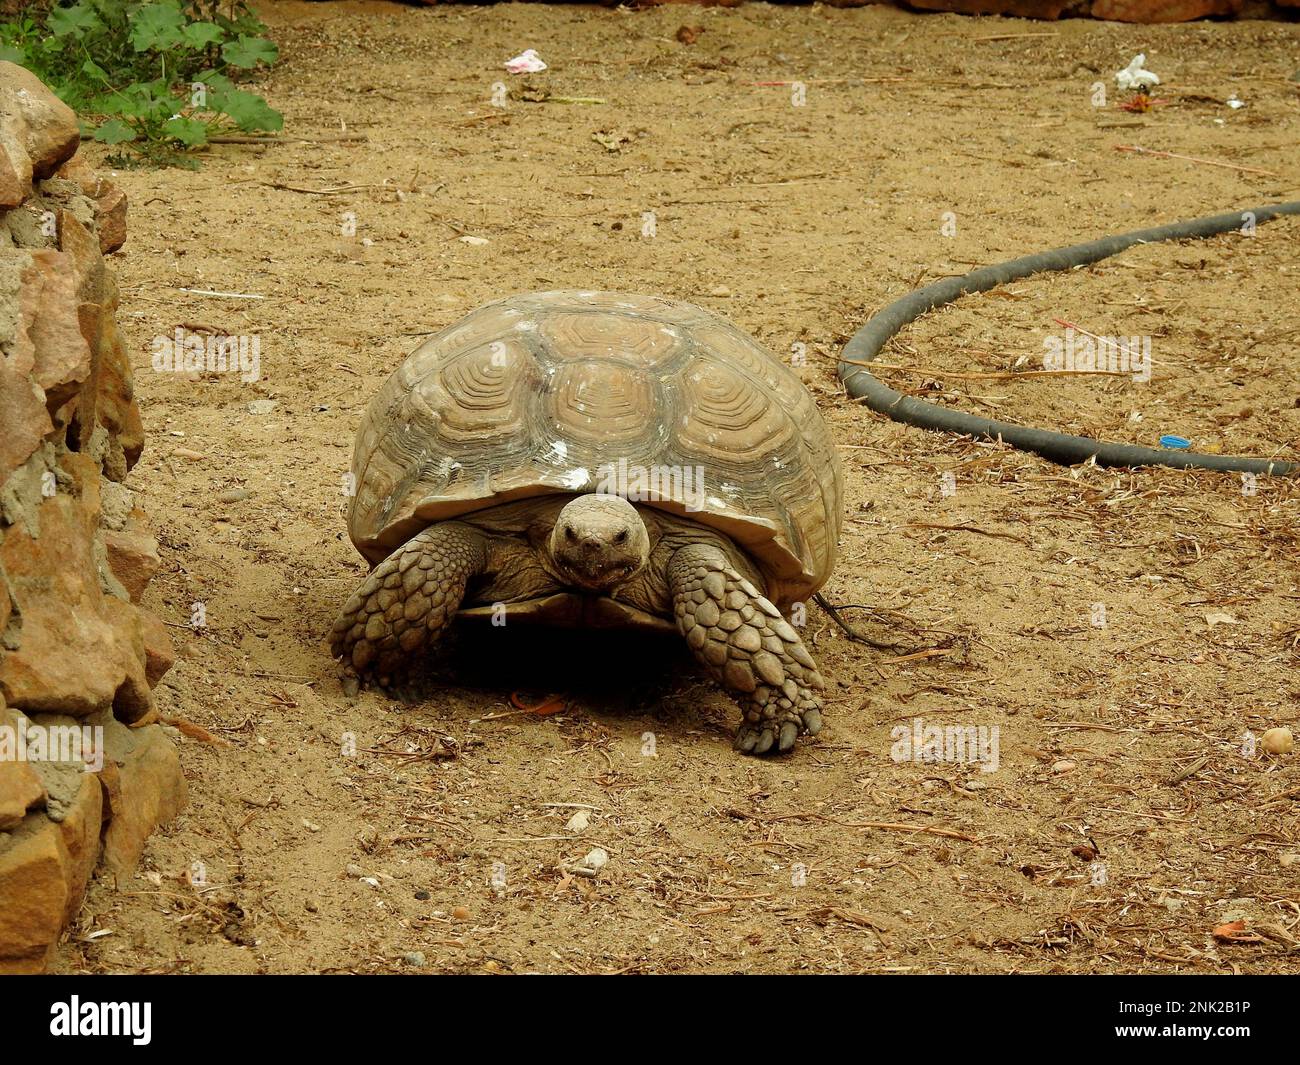 La tortue forestière asiatique (Manouria emys), également connue sous le nom de tortue montagneuse, est une espèce de tortue de la famille des Testudinidae, originaire de l'ier Banque D'Images